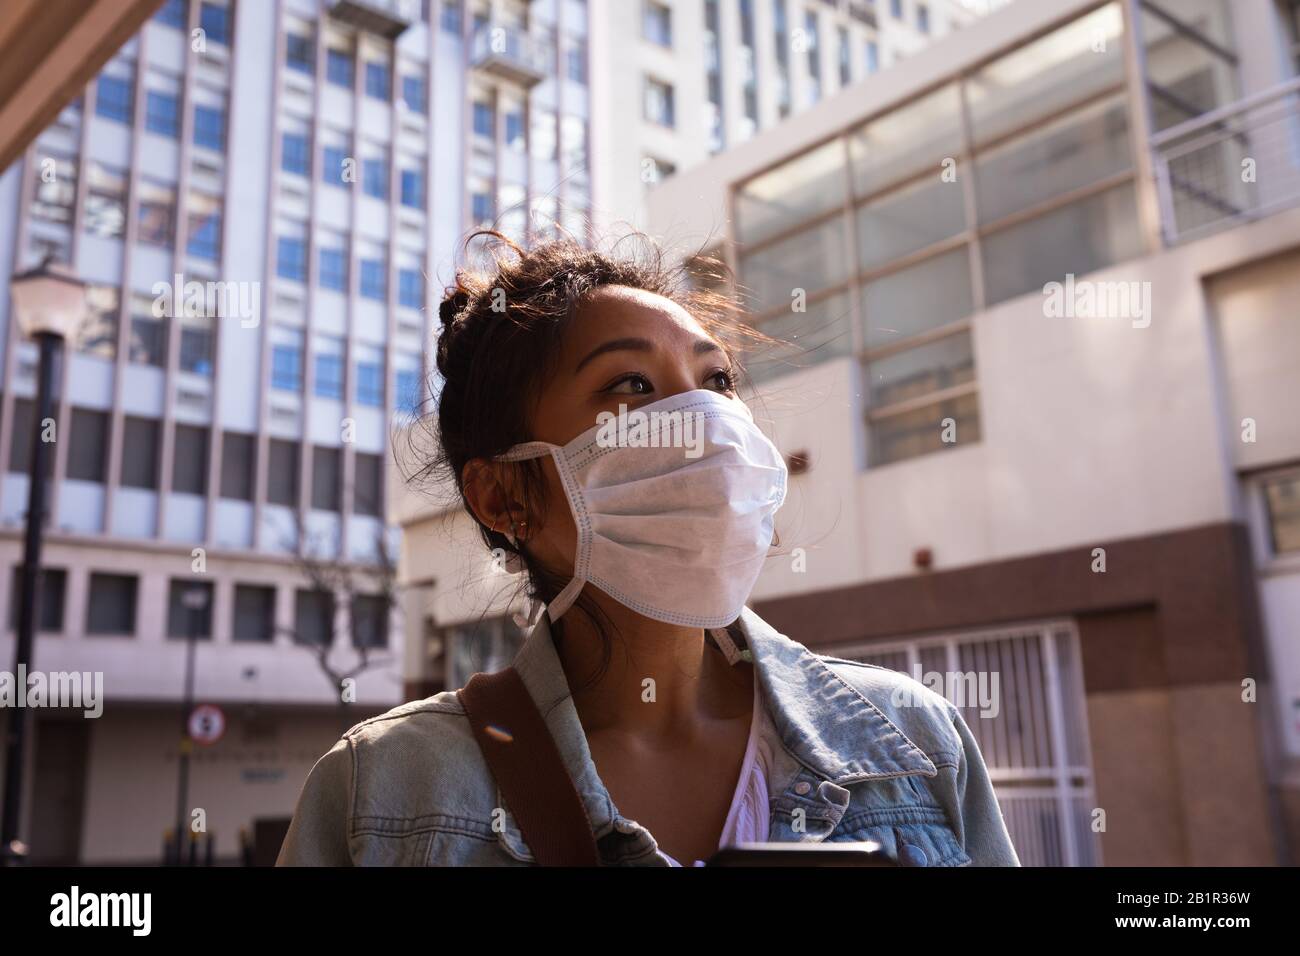 Woman wearing a Corona Virus face mask Stock Photo